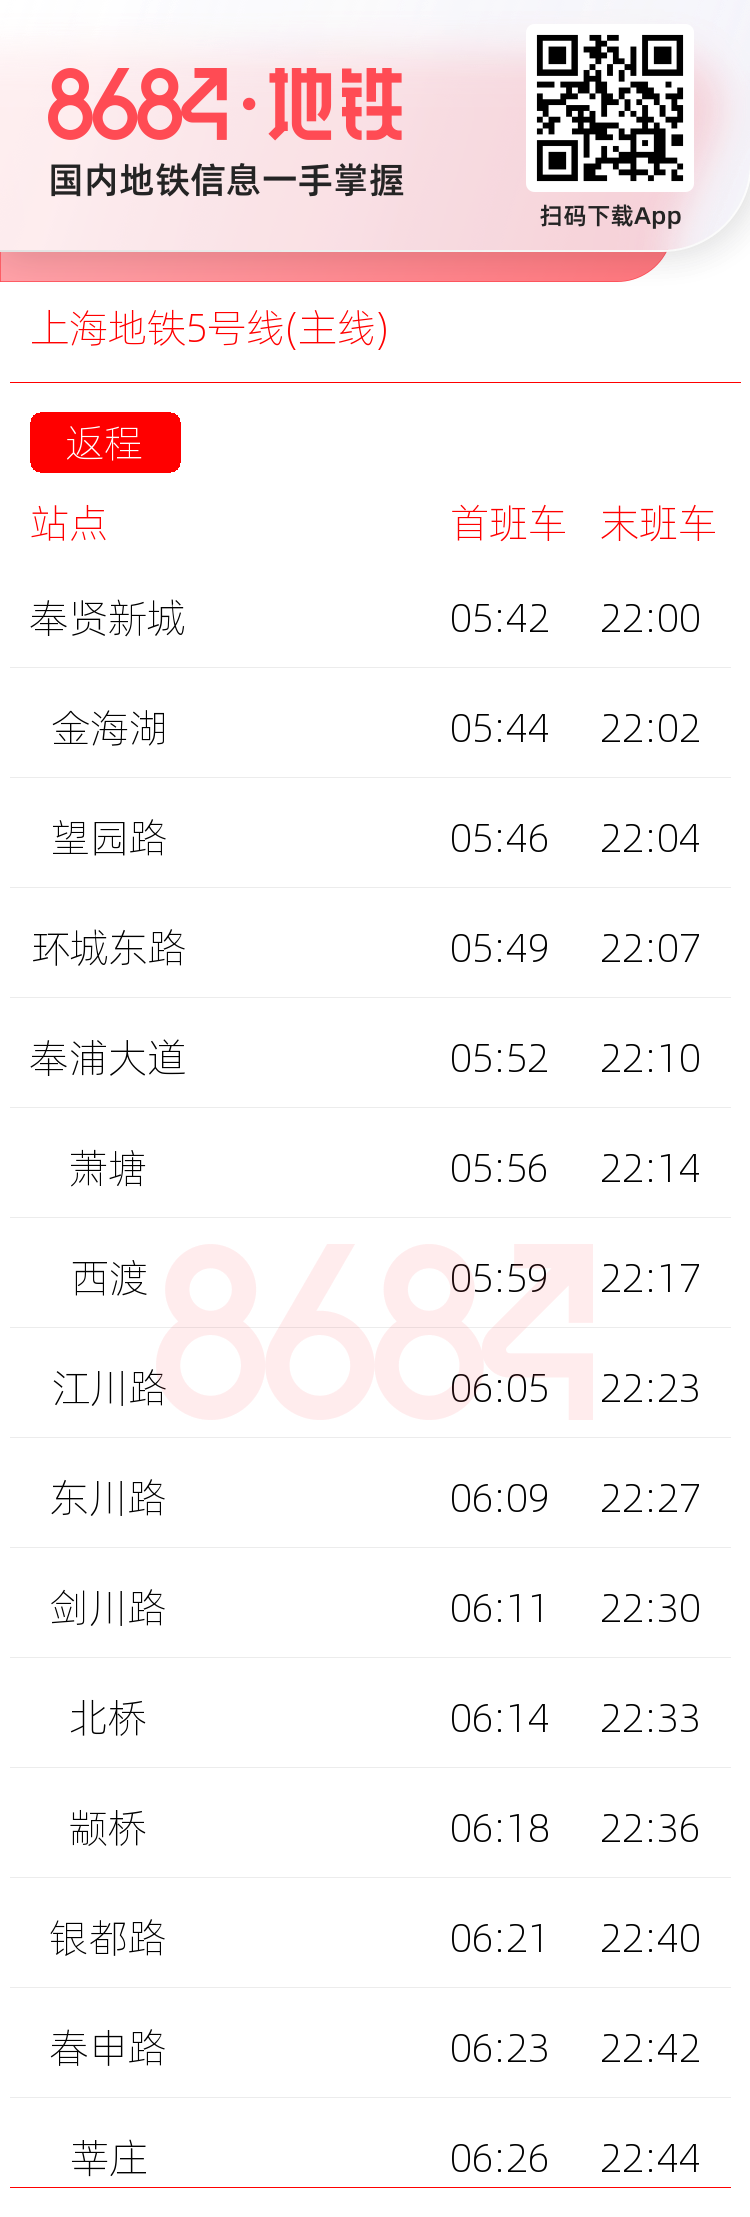 上海地铁5号线(主线)运营时间表